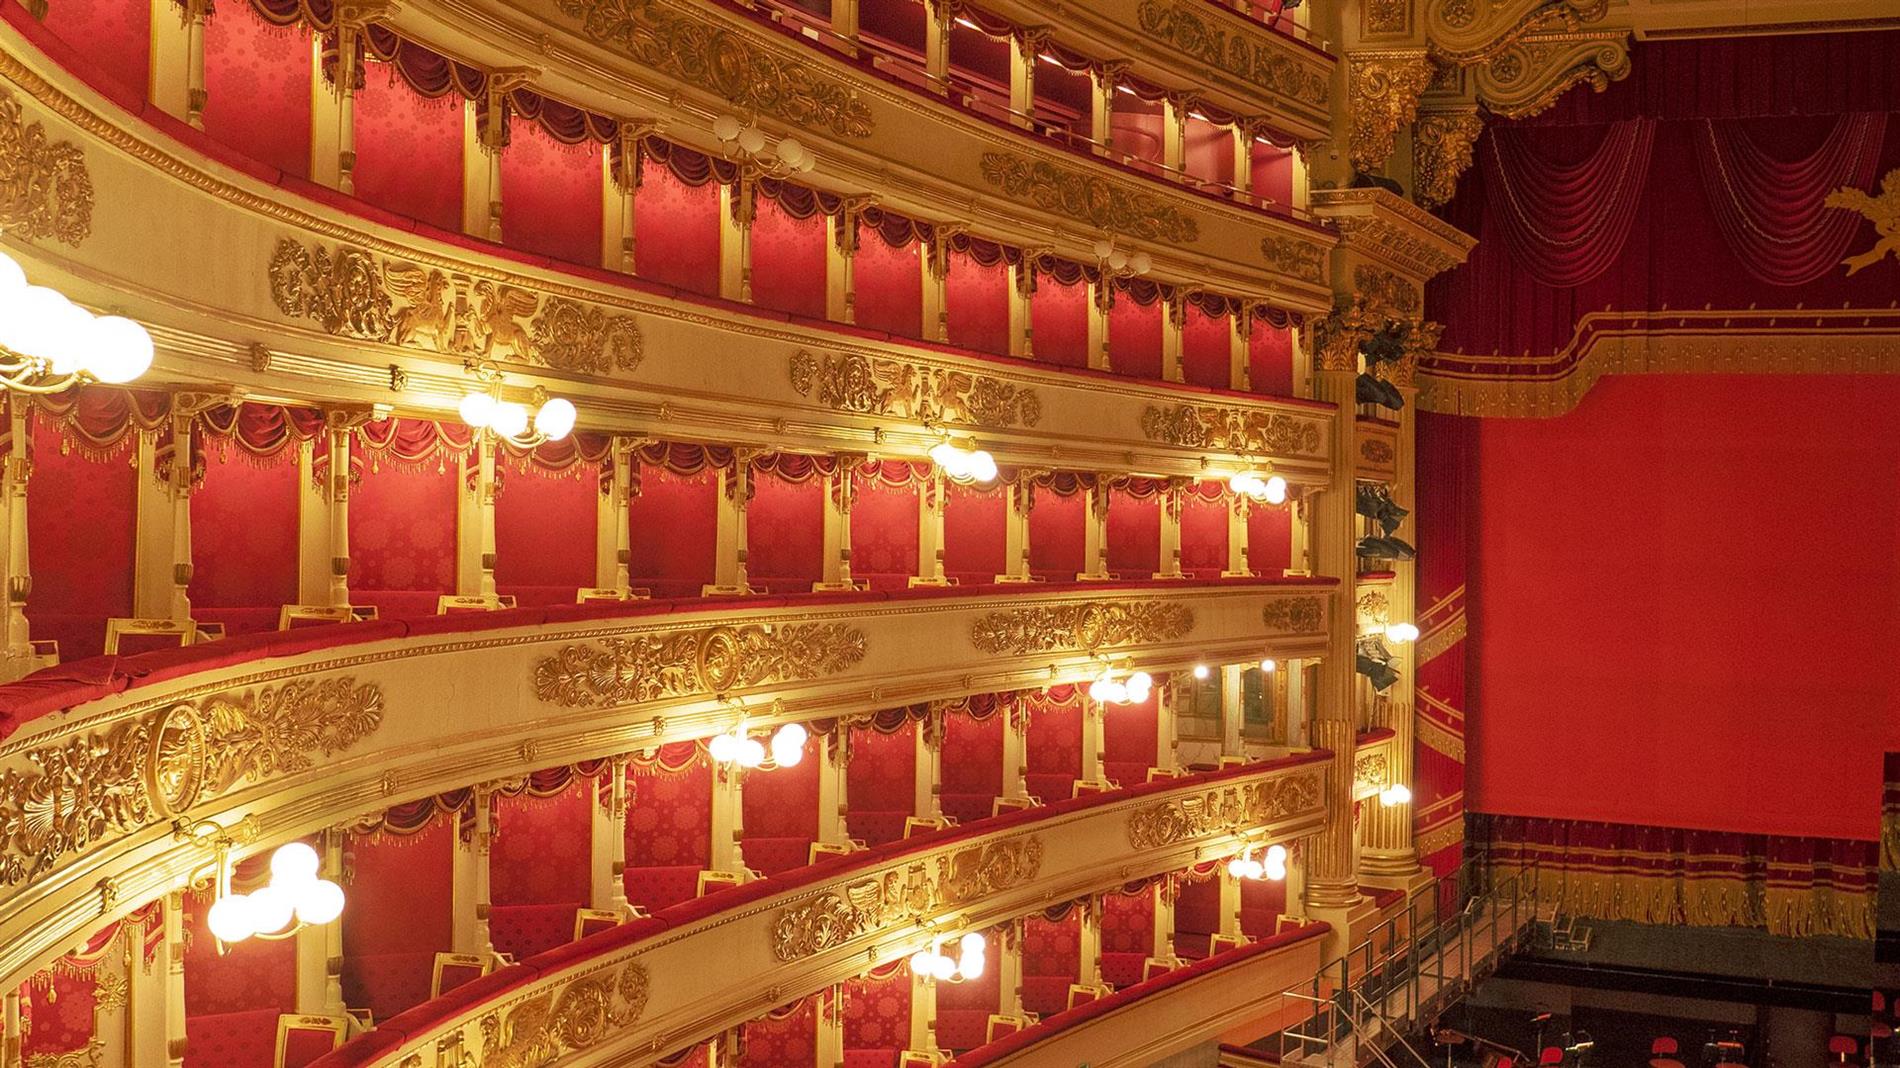 Fincons Group celebra i suoi 40 anni al Teatro alla Scala